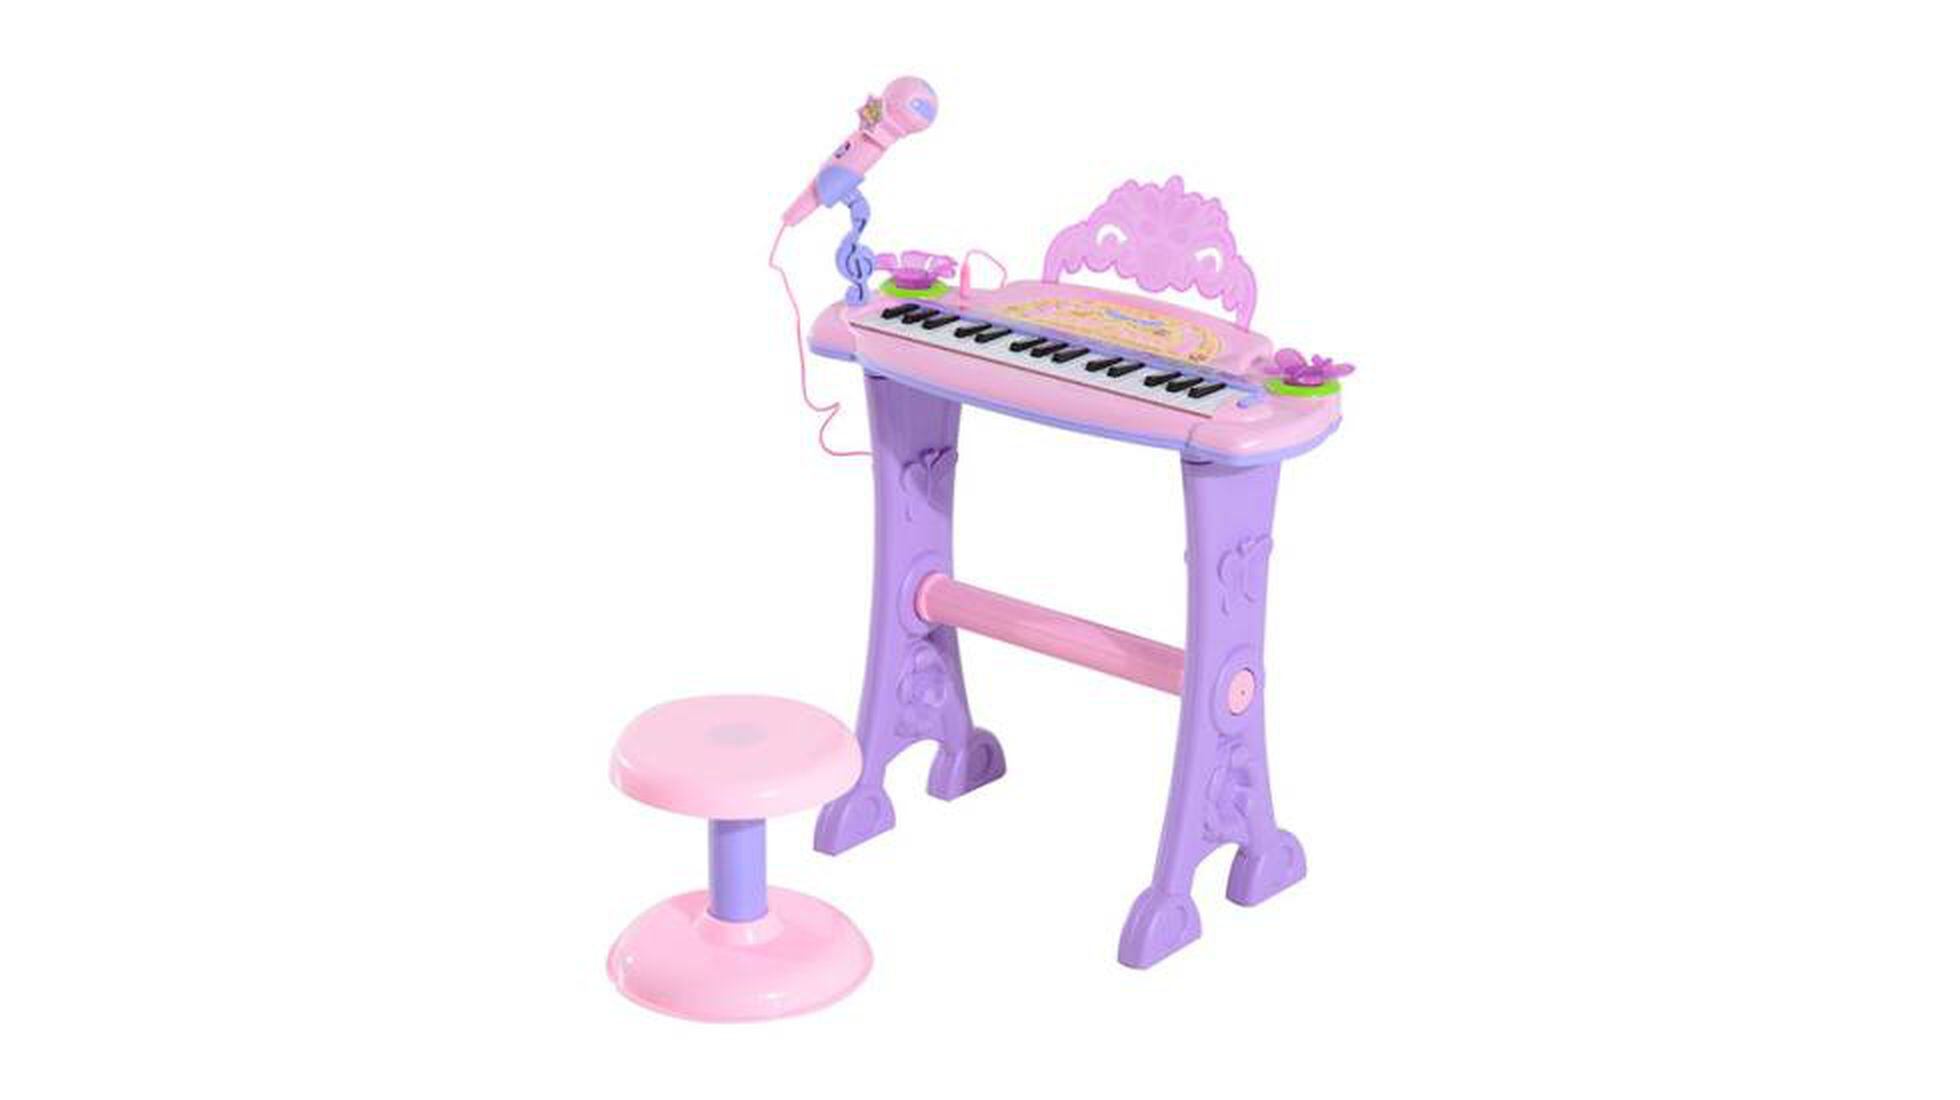 Piano, micrófono musical y taburete para niños, función de grabación,  batería de color rosa